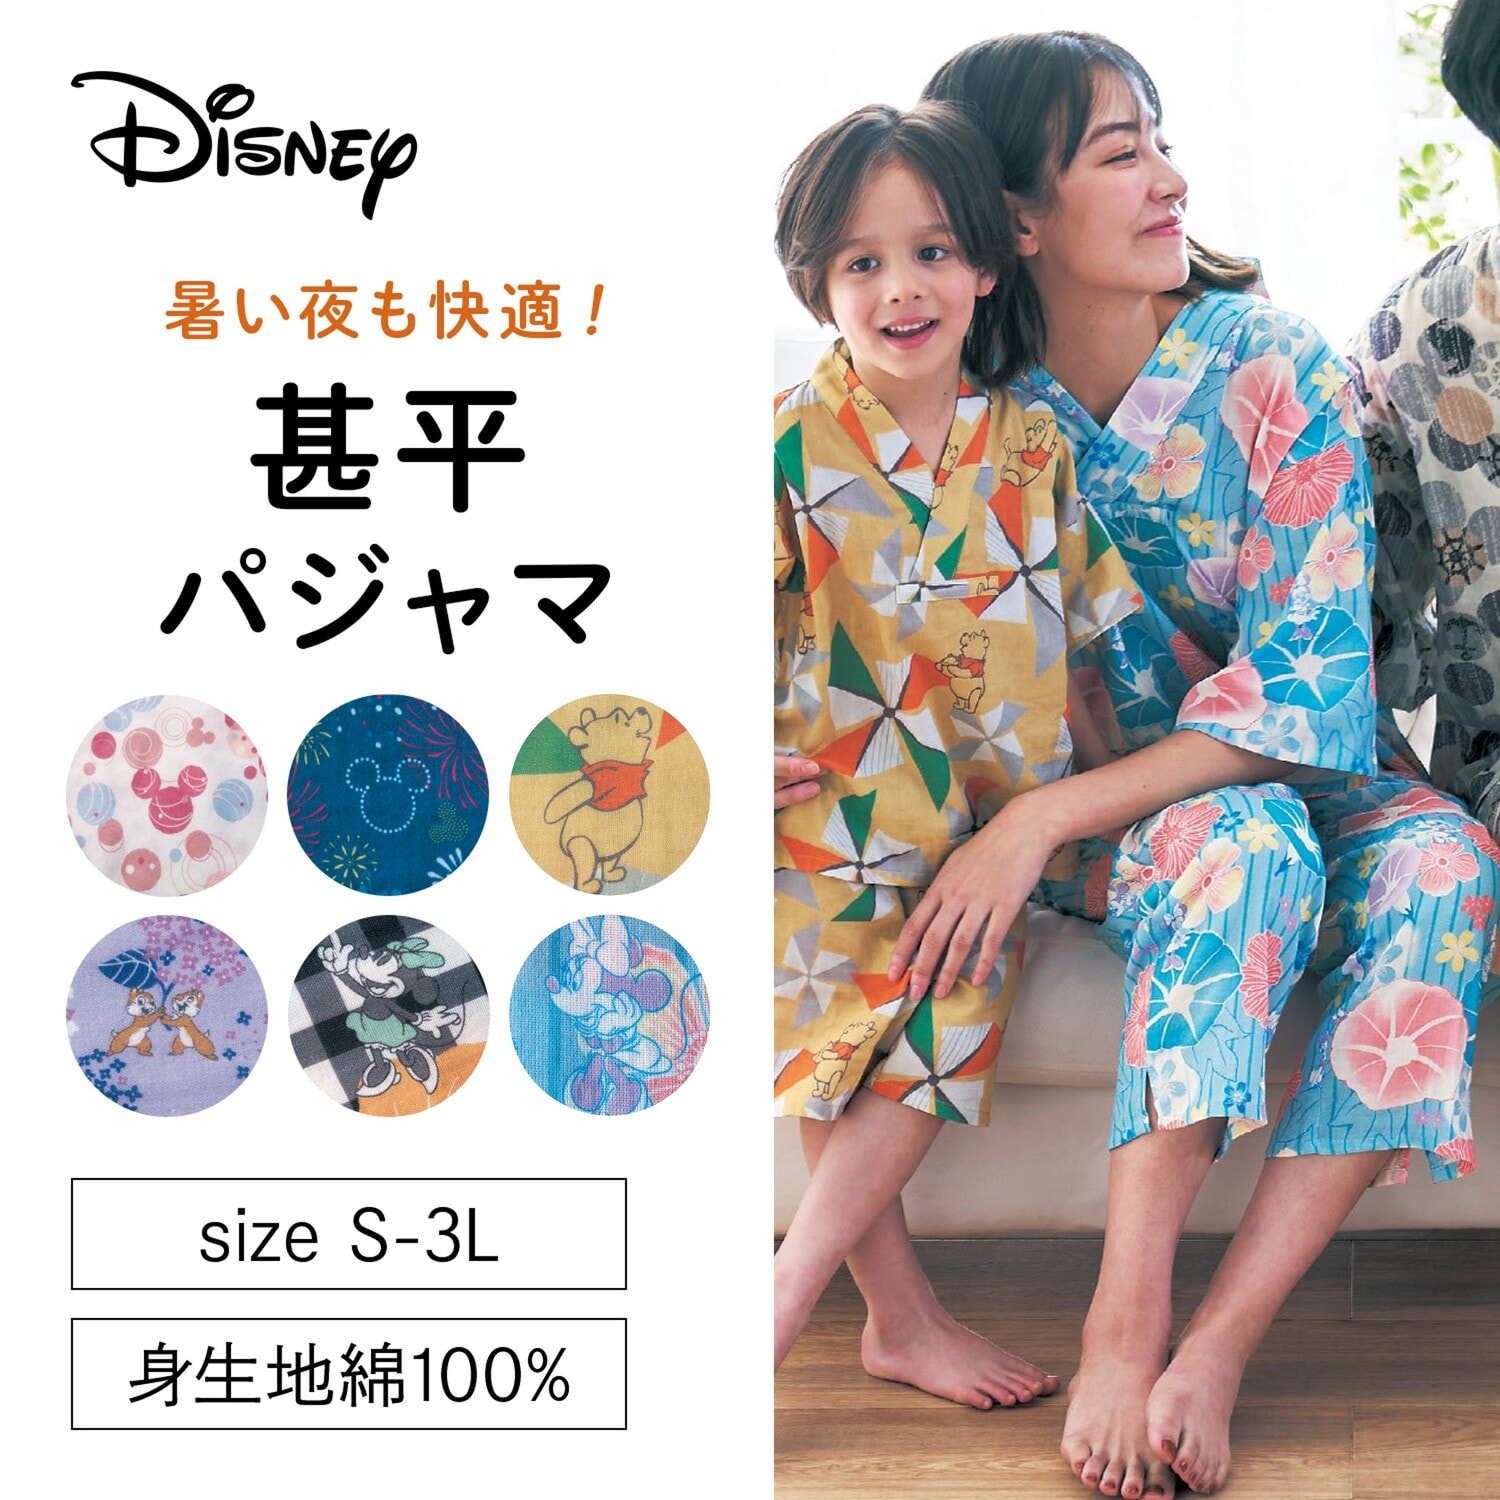 【ディズニー/Disney】レディースダブルガーゼかぶり甚平パジャマ(選べるキャラクター)